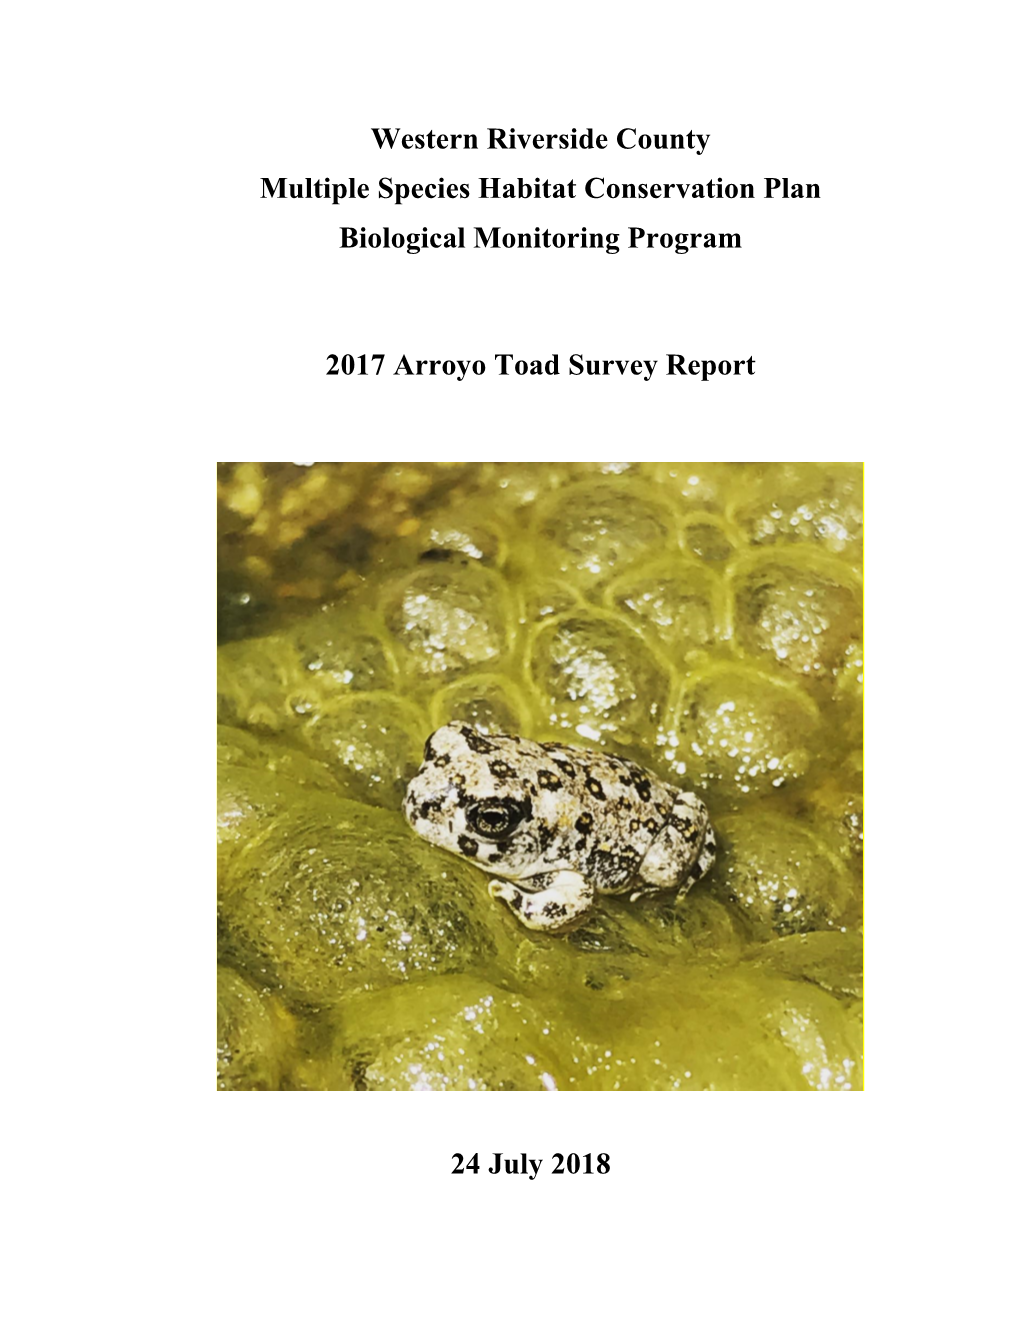 Arroyo Toad Survey Report 2017